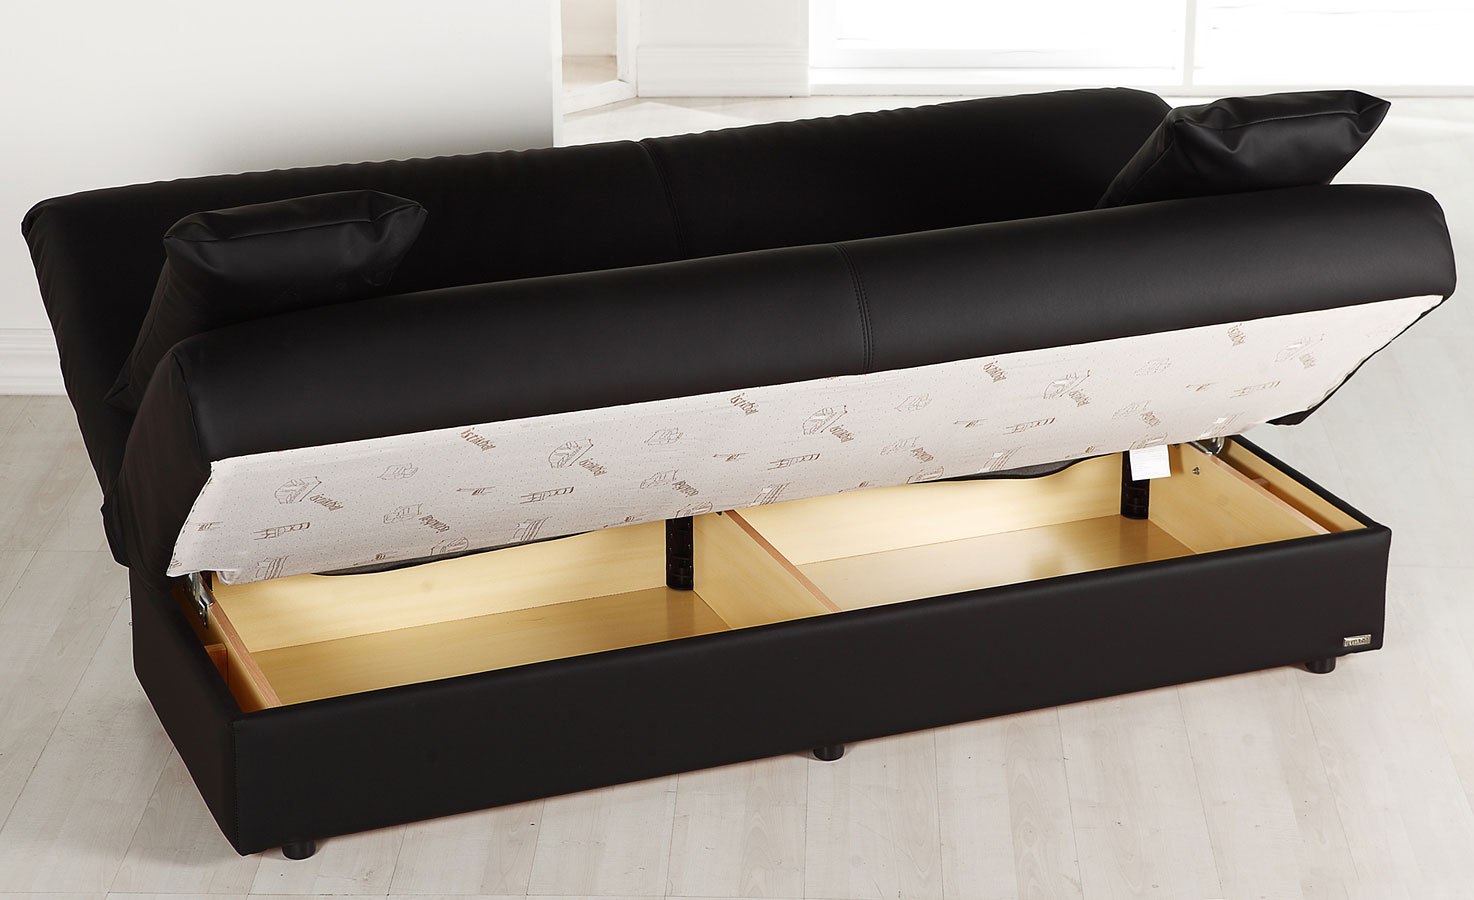 Regata Click Clack Sofa Bed (Escudo Black) Bellona